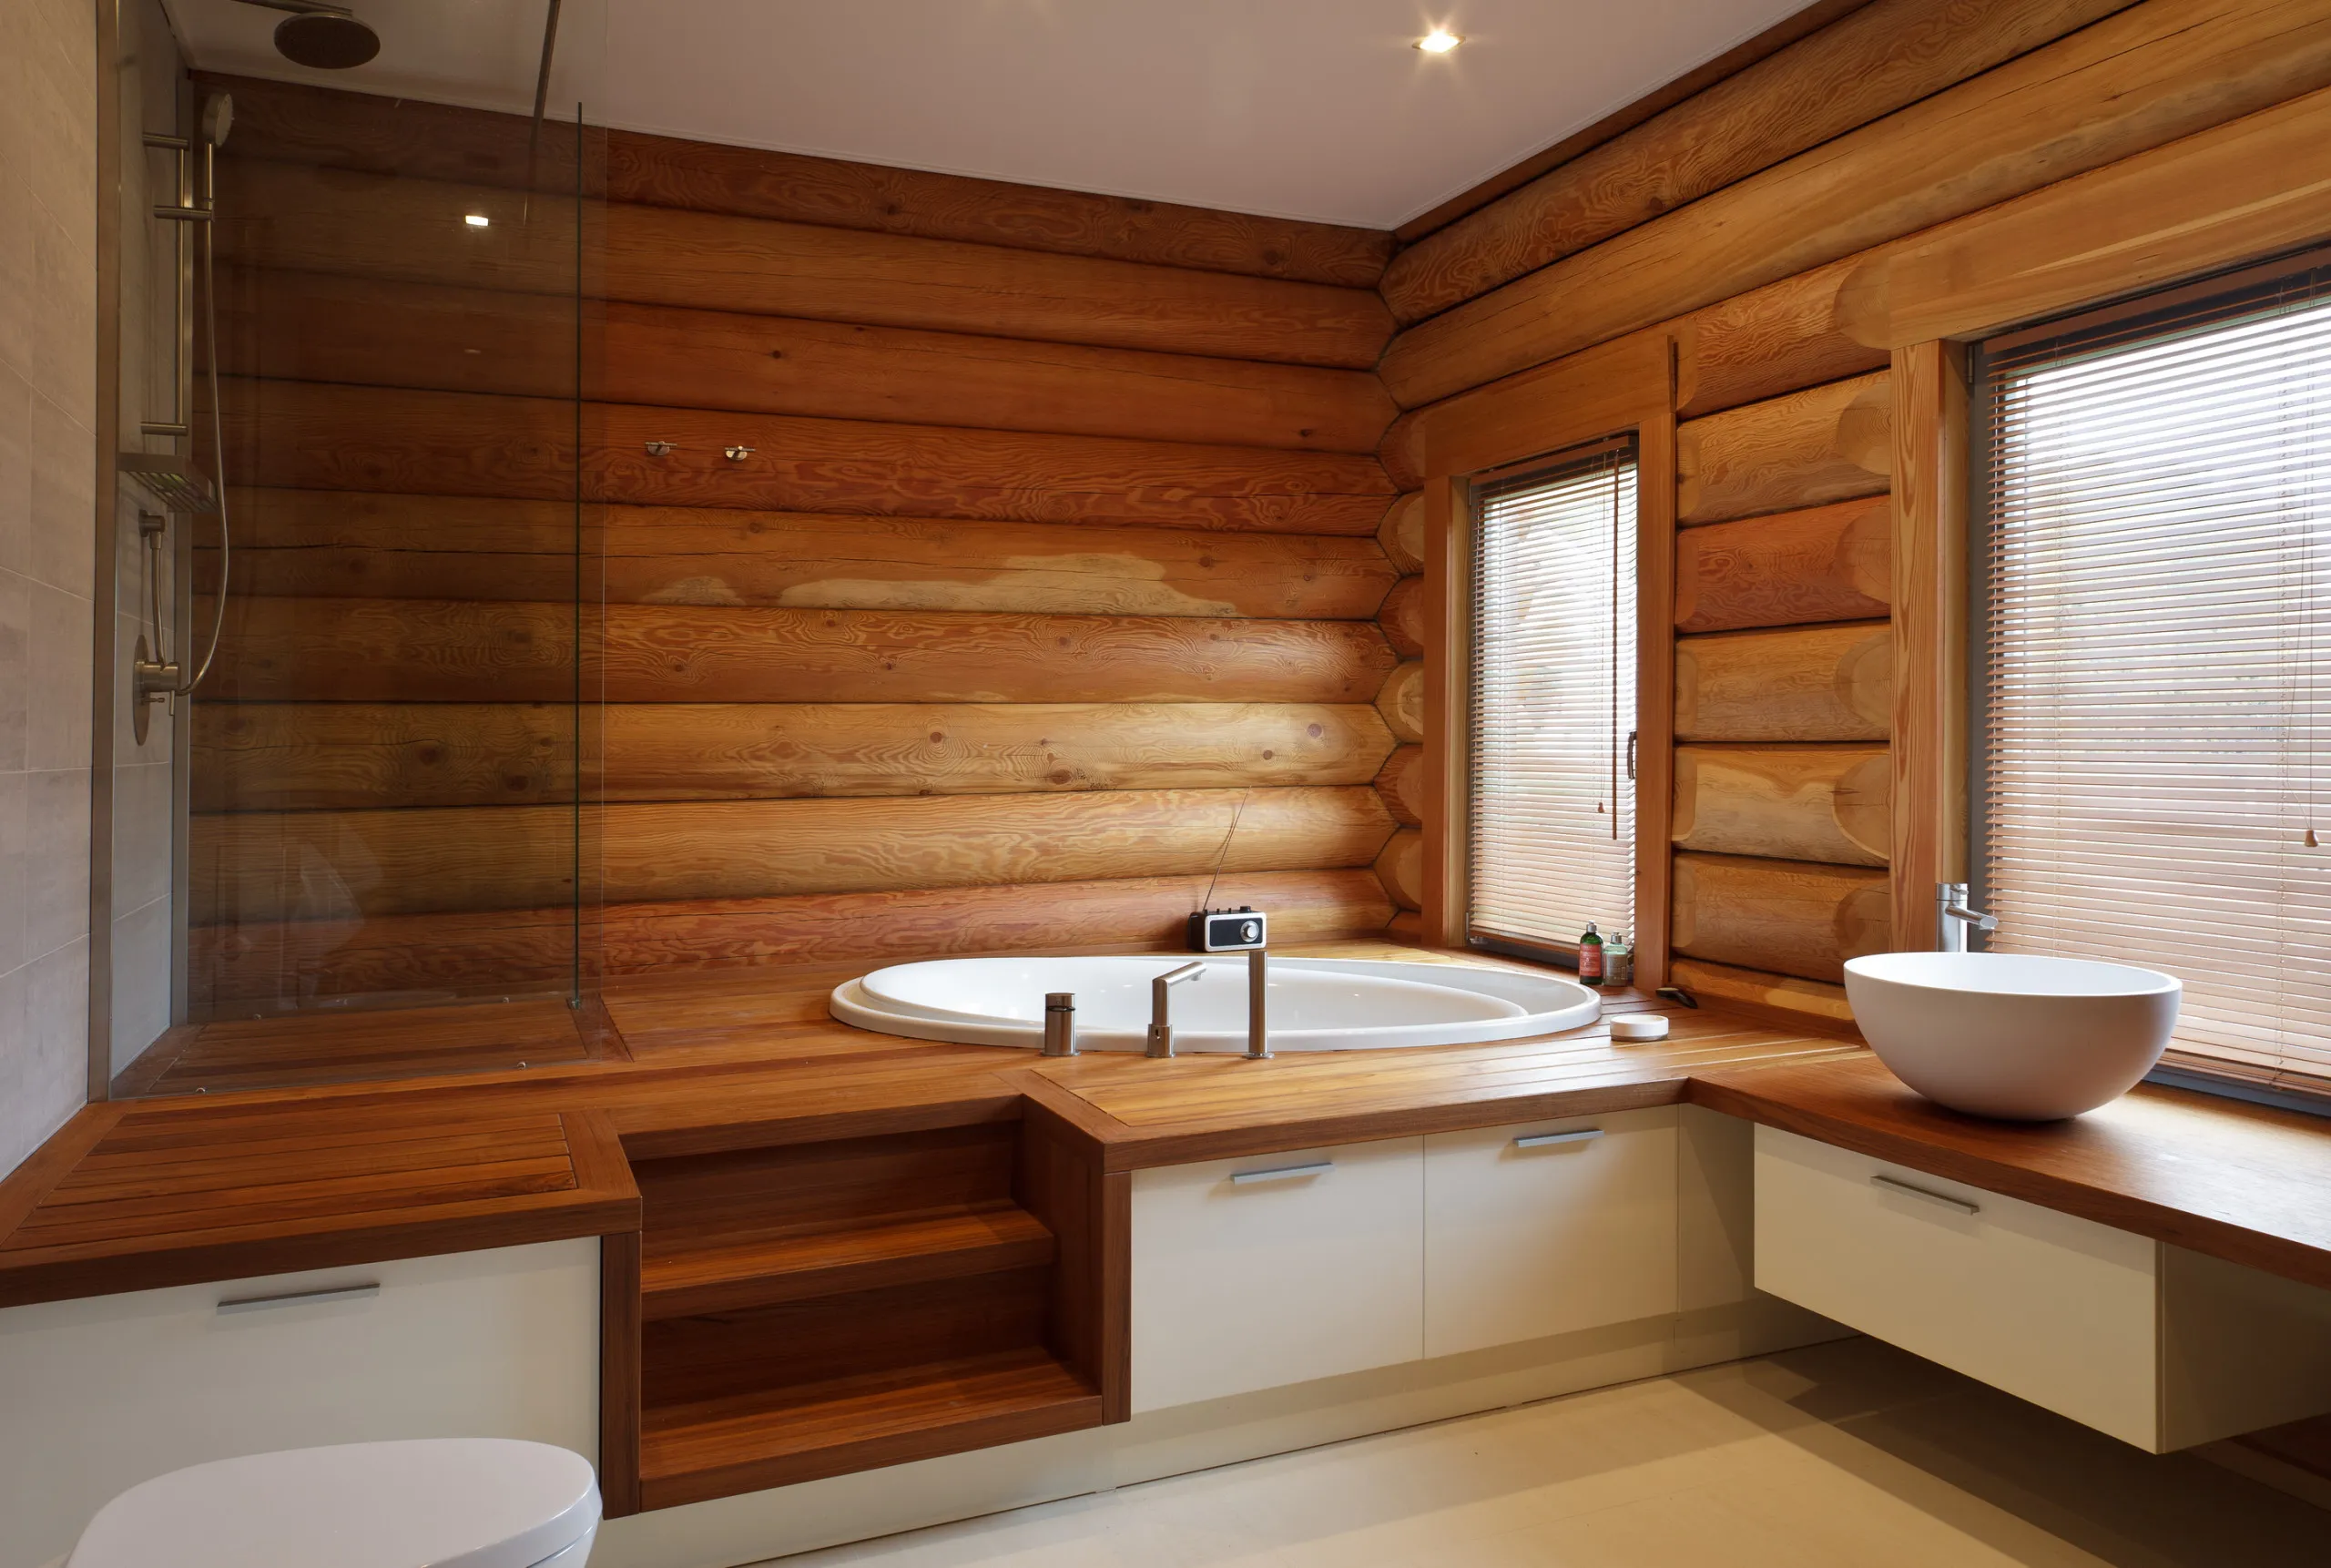 Ванная в деревянном доме: все, что нужно знать